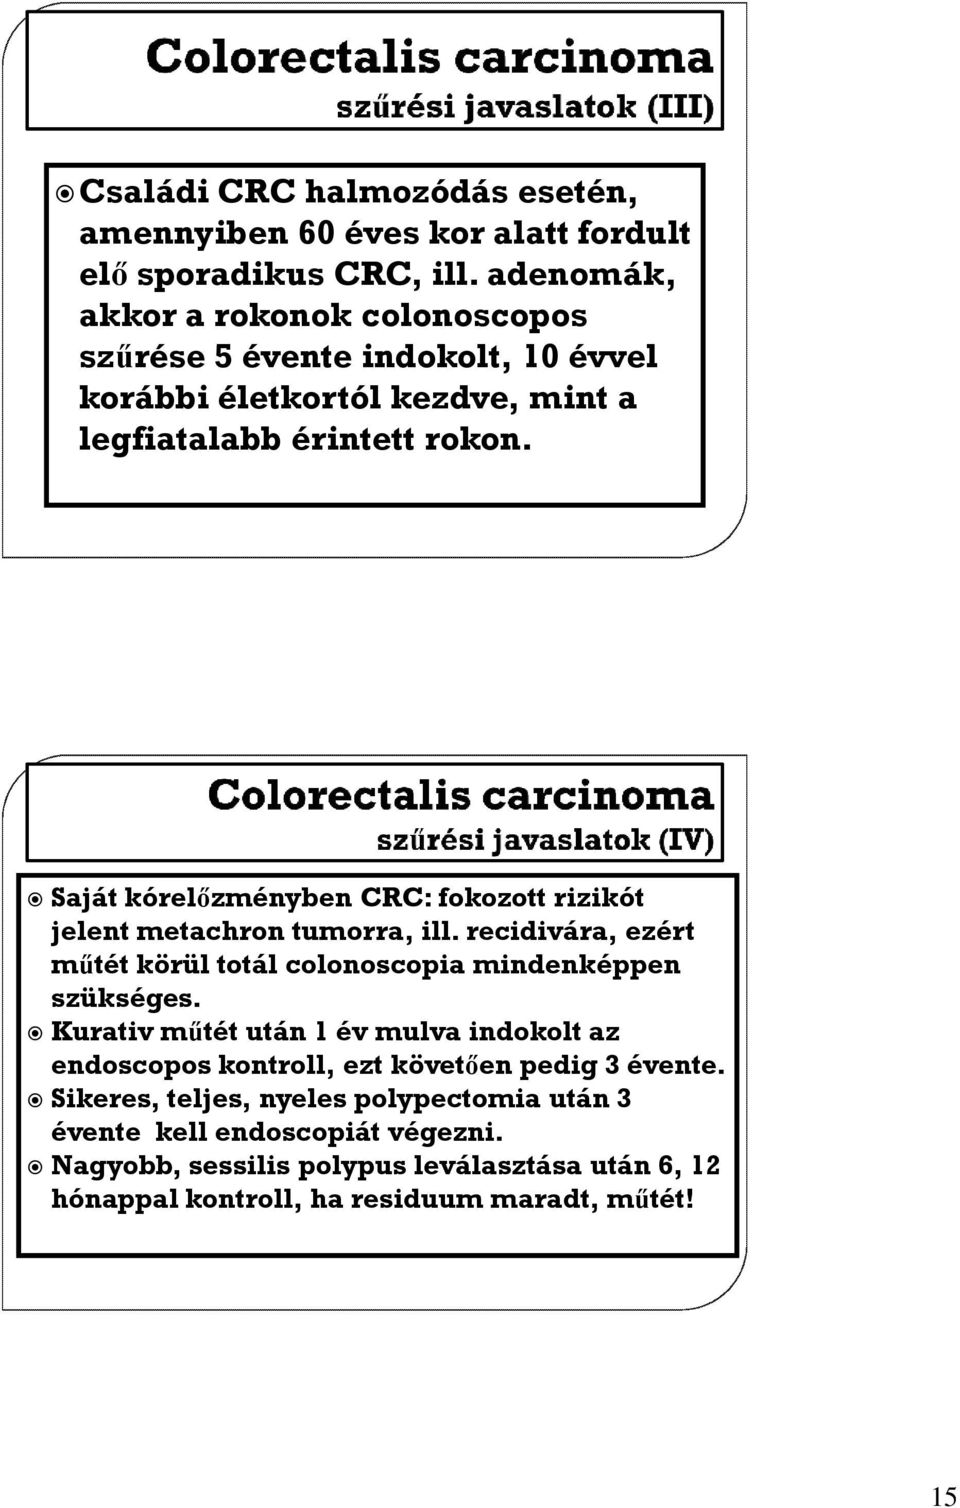 Saját kórelőzményben CRC: fokozott rizikót jelent metachron tumorra, ill. recidivára, ezért műtét körül totál colonoscopia mindenképpen szükséges.